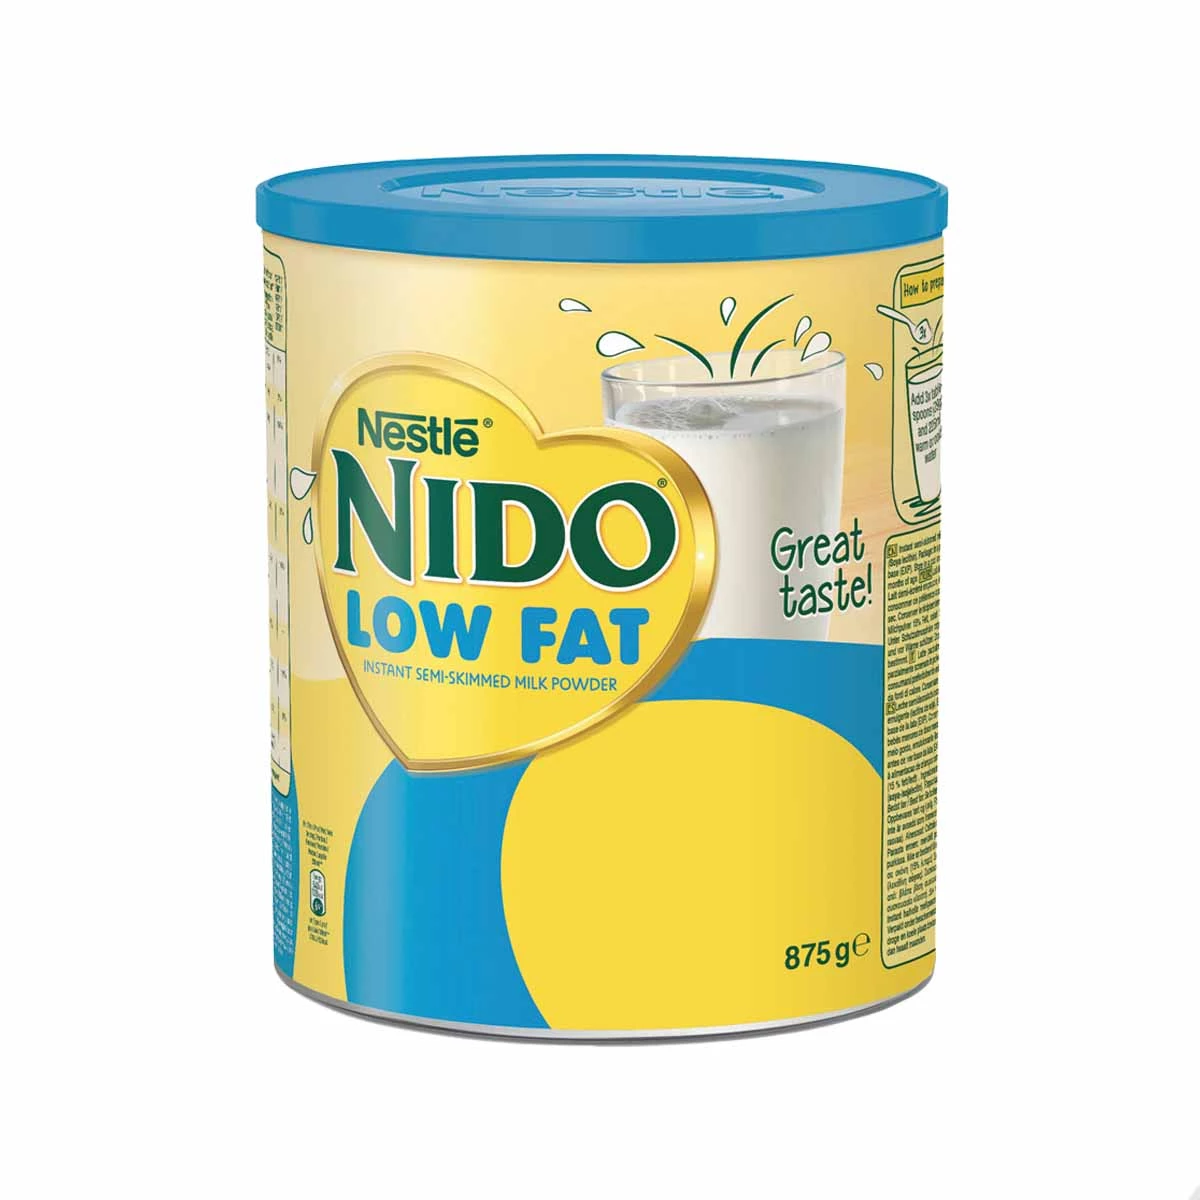 低脂奶粉 (12 X 875 G) - Nido